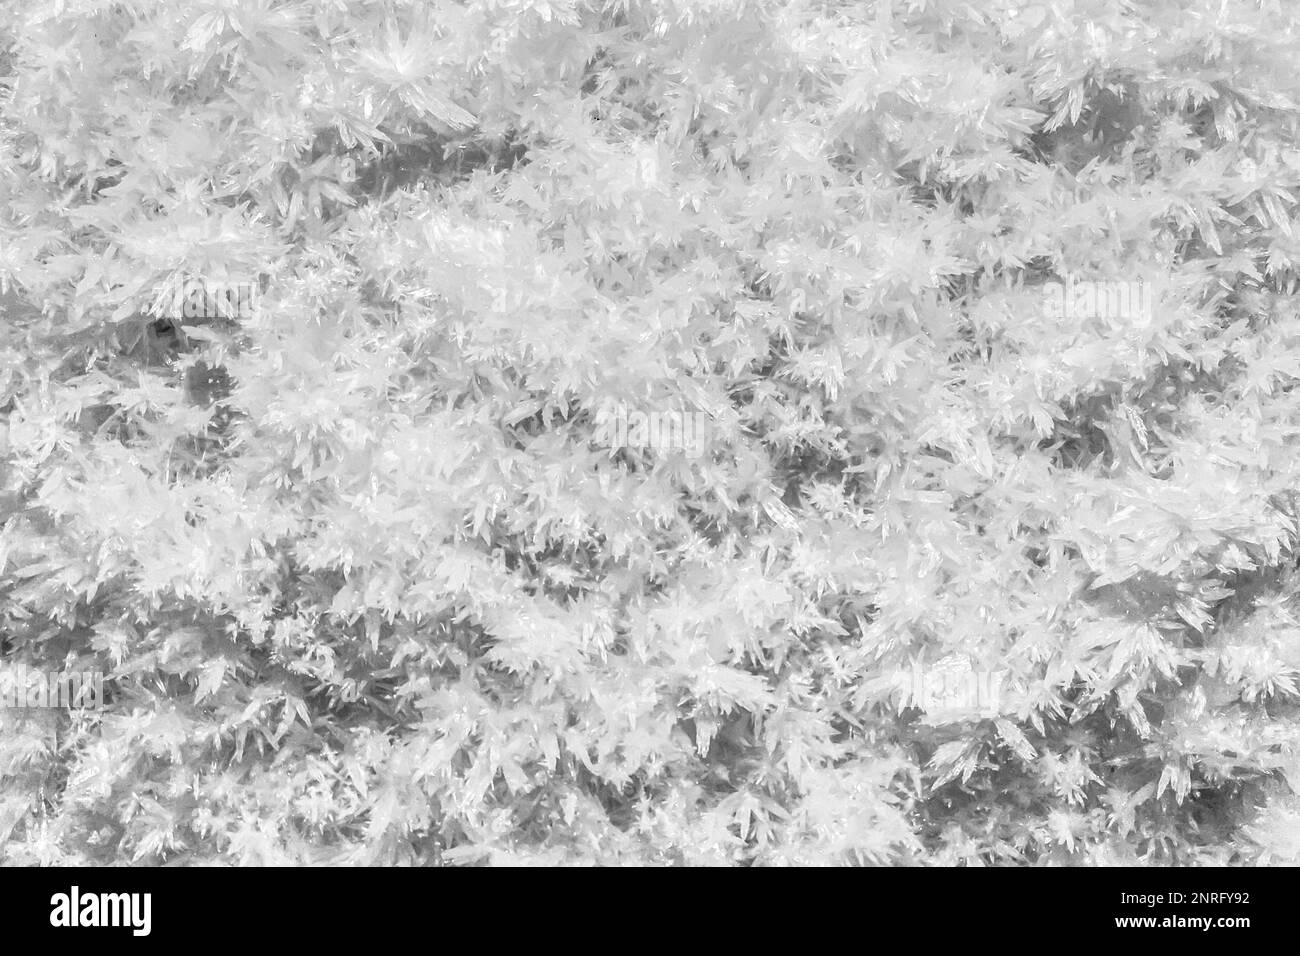 Vollbild-Nahaufnahme mit vielen kleinen weißen Kristallen Stockfoto